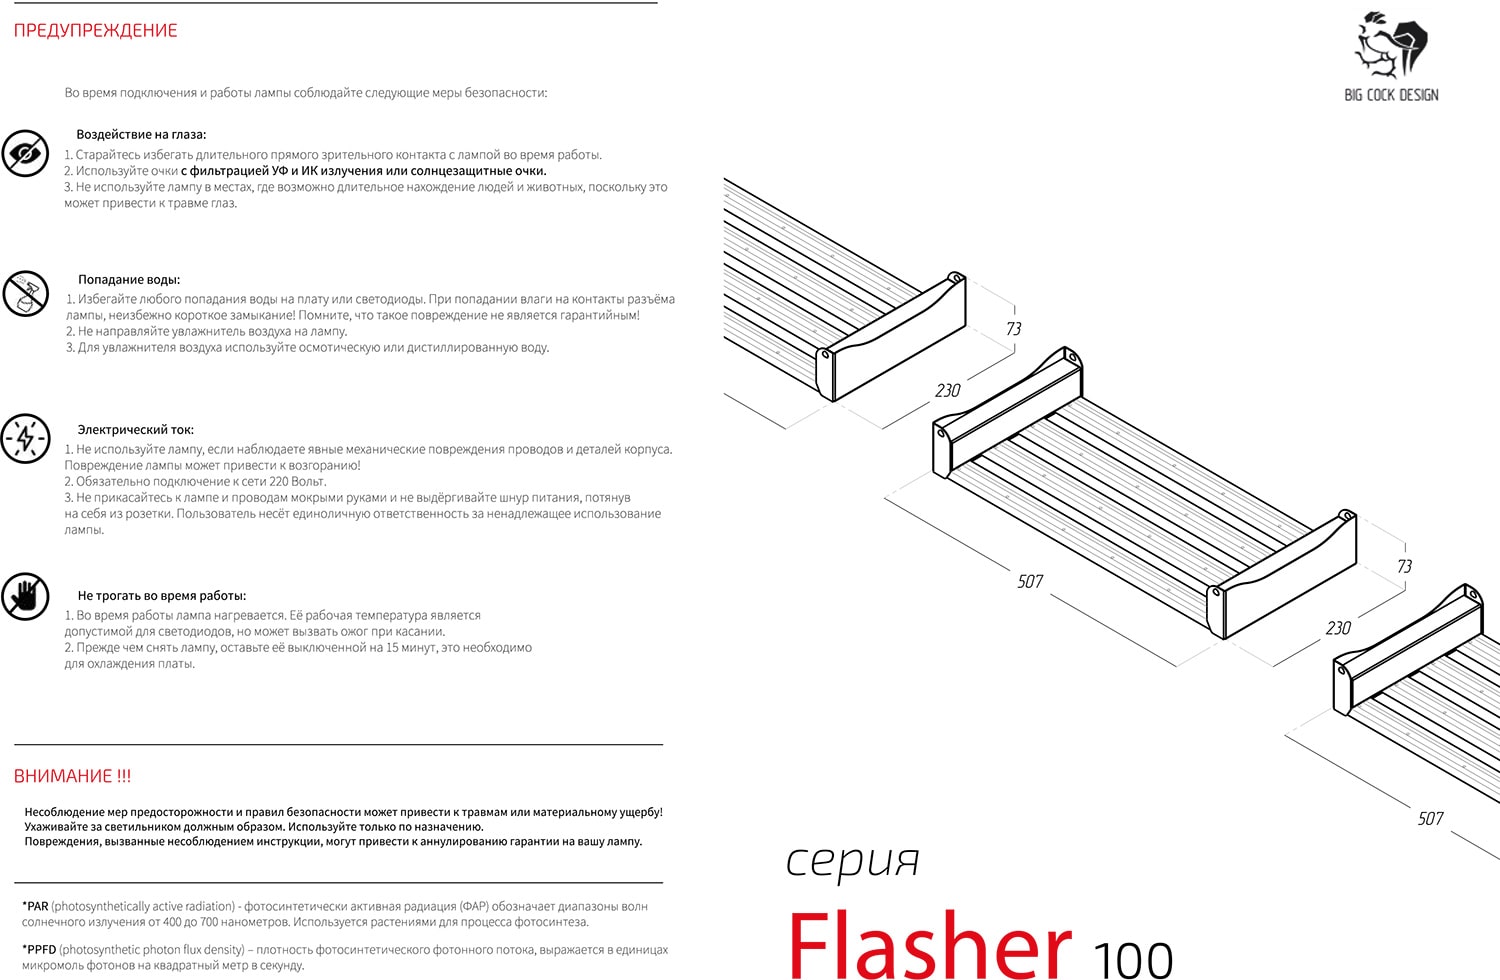 Инструкция к светильнику Big Cock Design Flasher 2 FL 100W - IRUVS